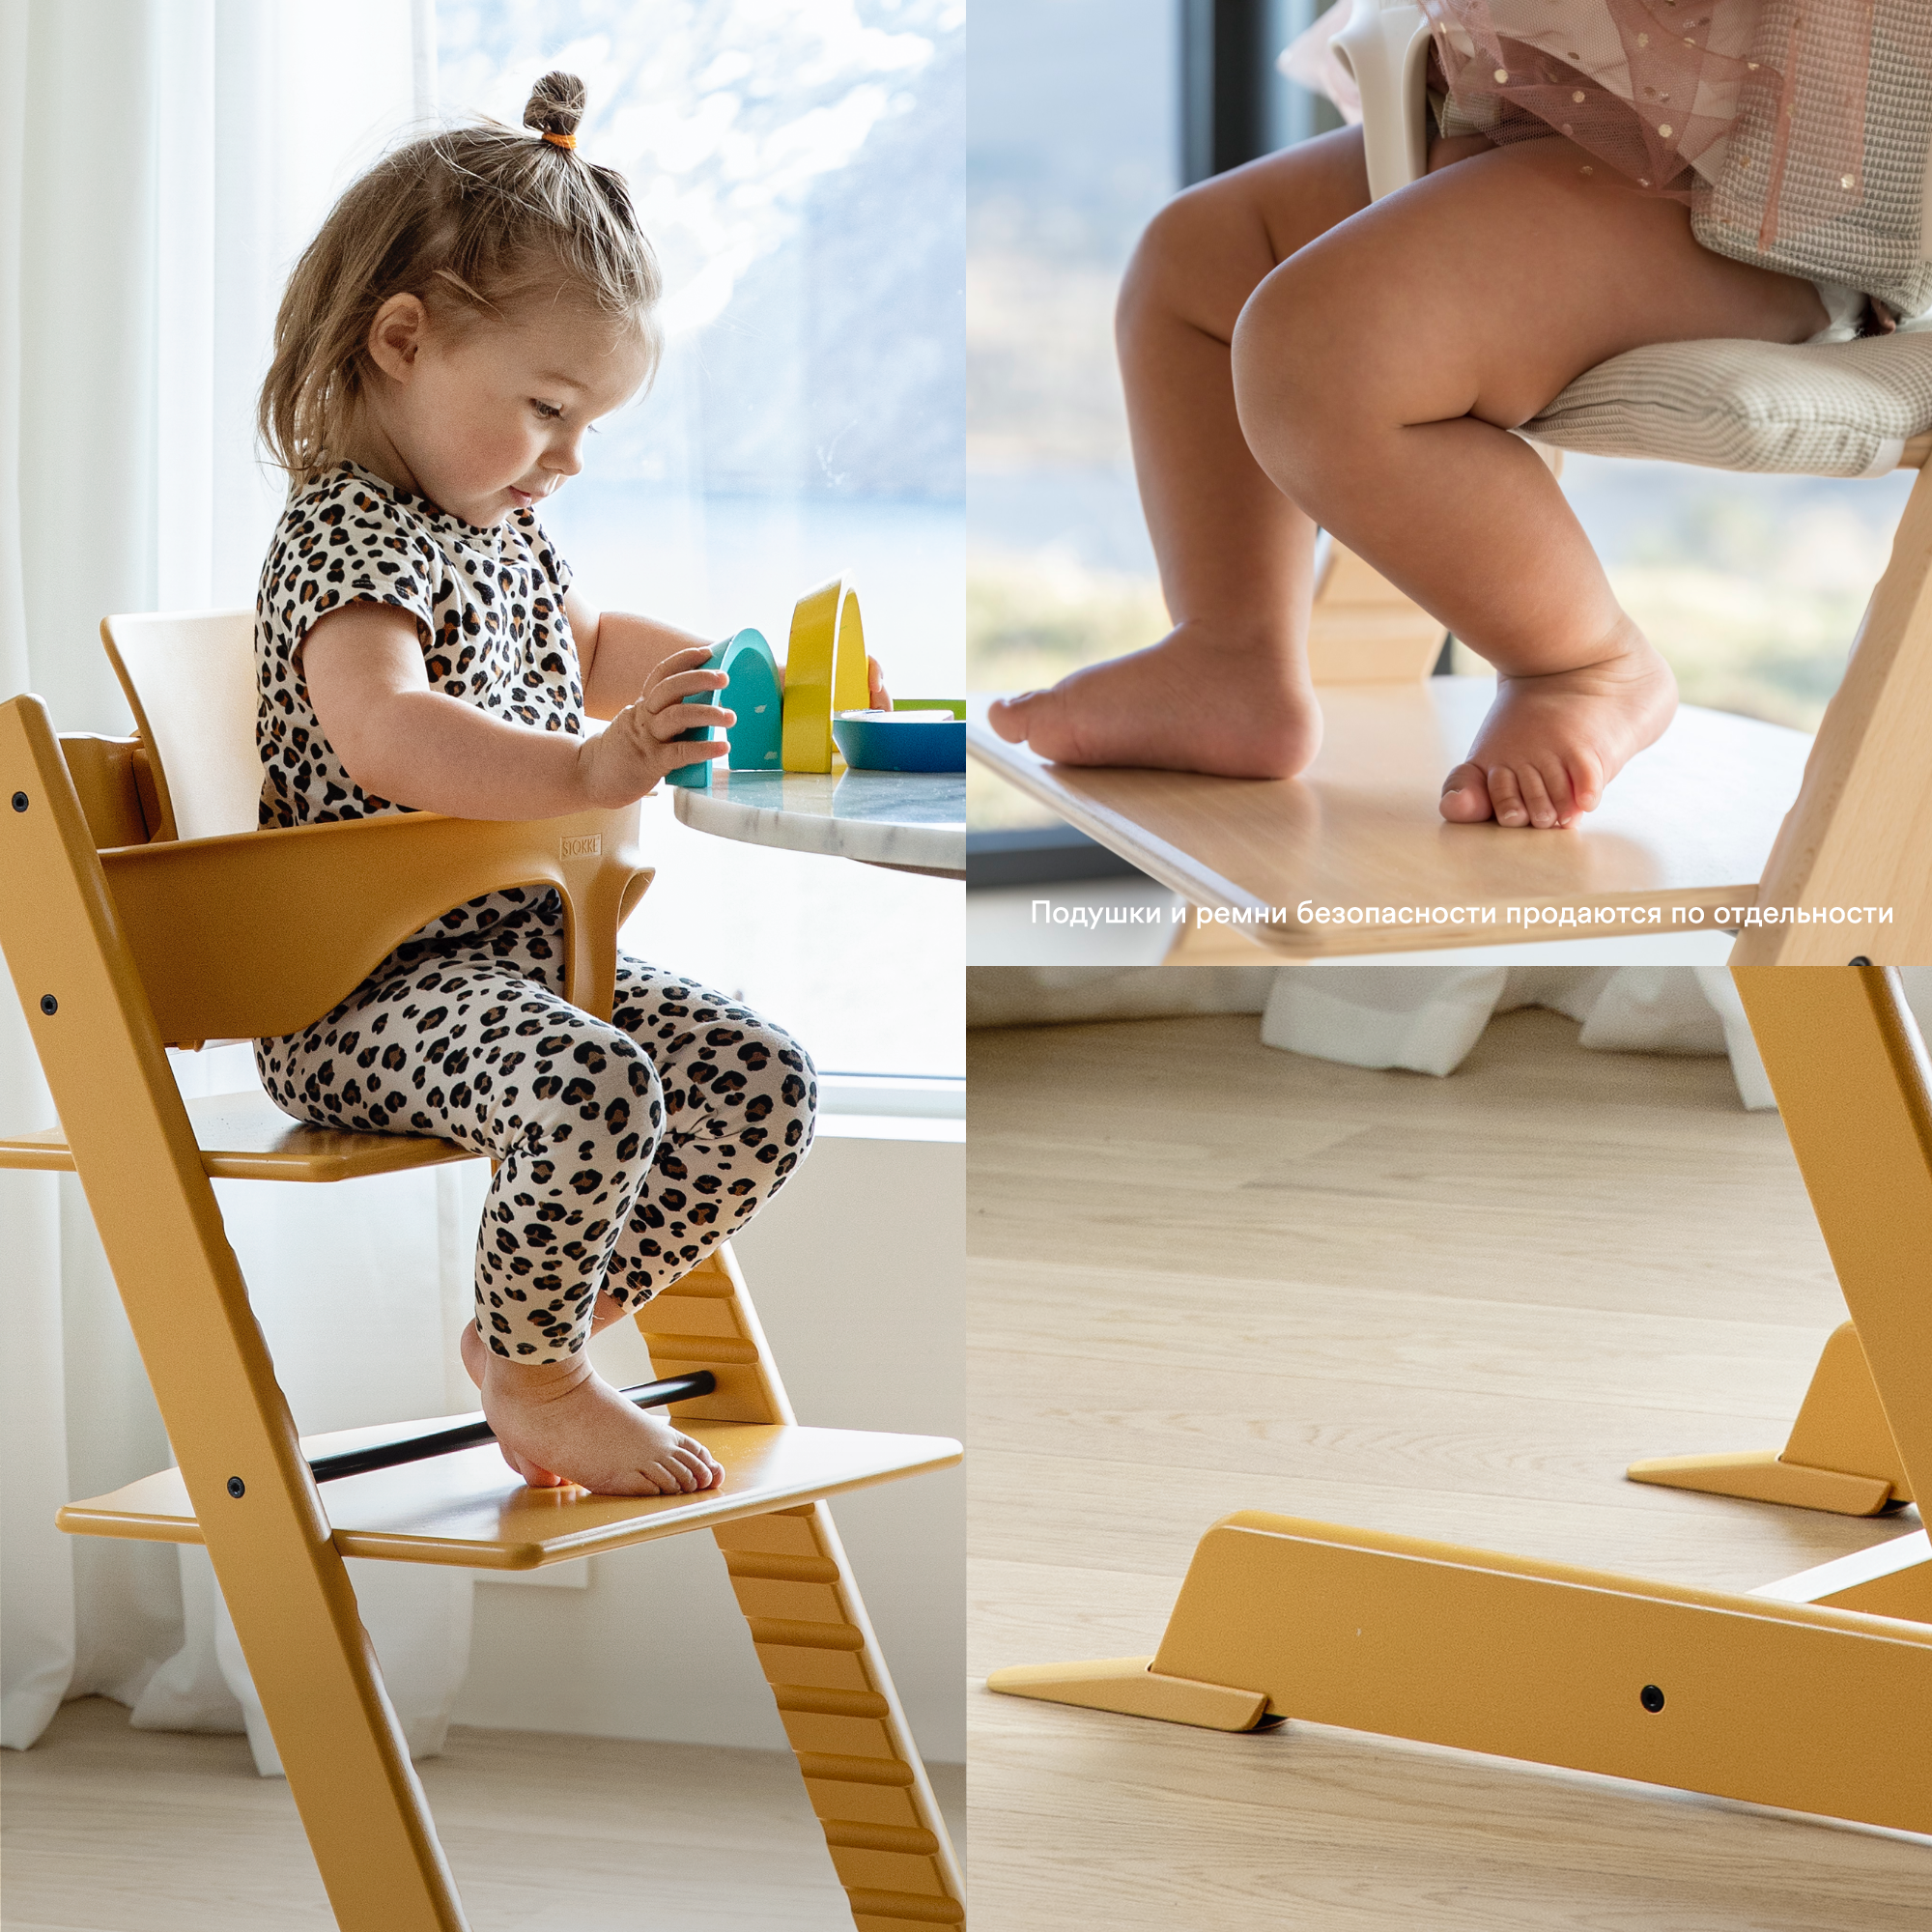 Набор Stokke Baby Set Tripp Trapp Hazy Grey: стульчик и спинка с ограничителем (k.100126.15) - фото 6